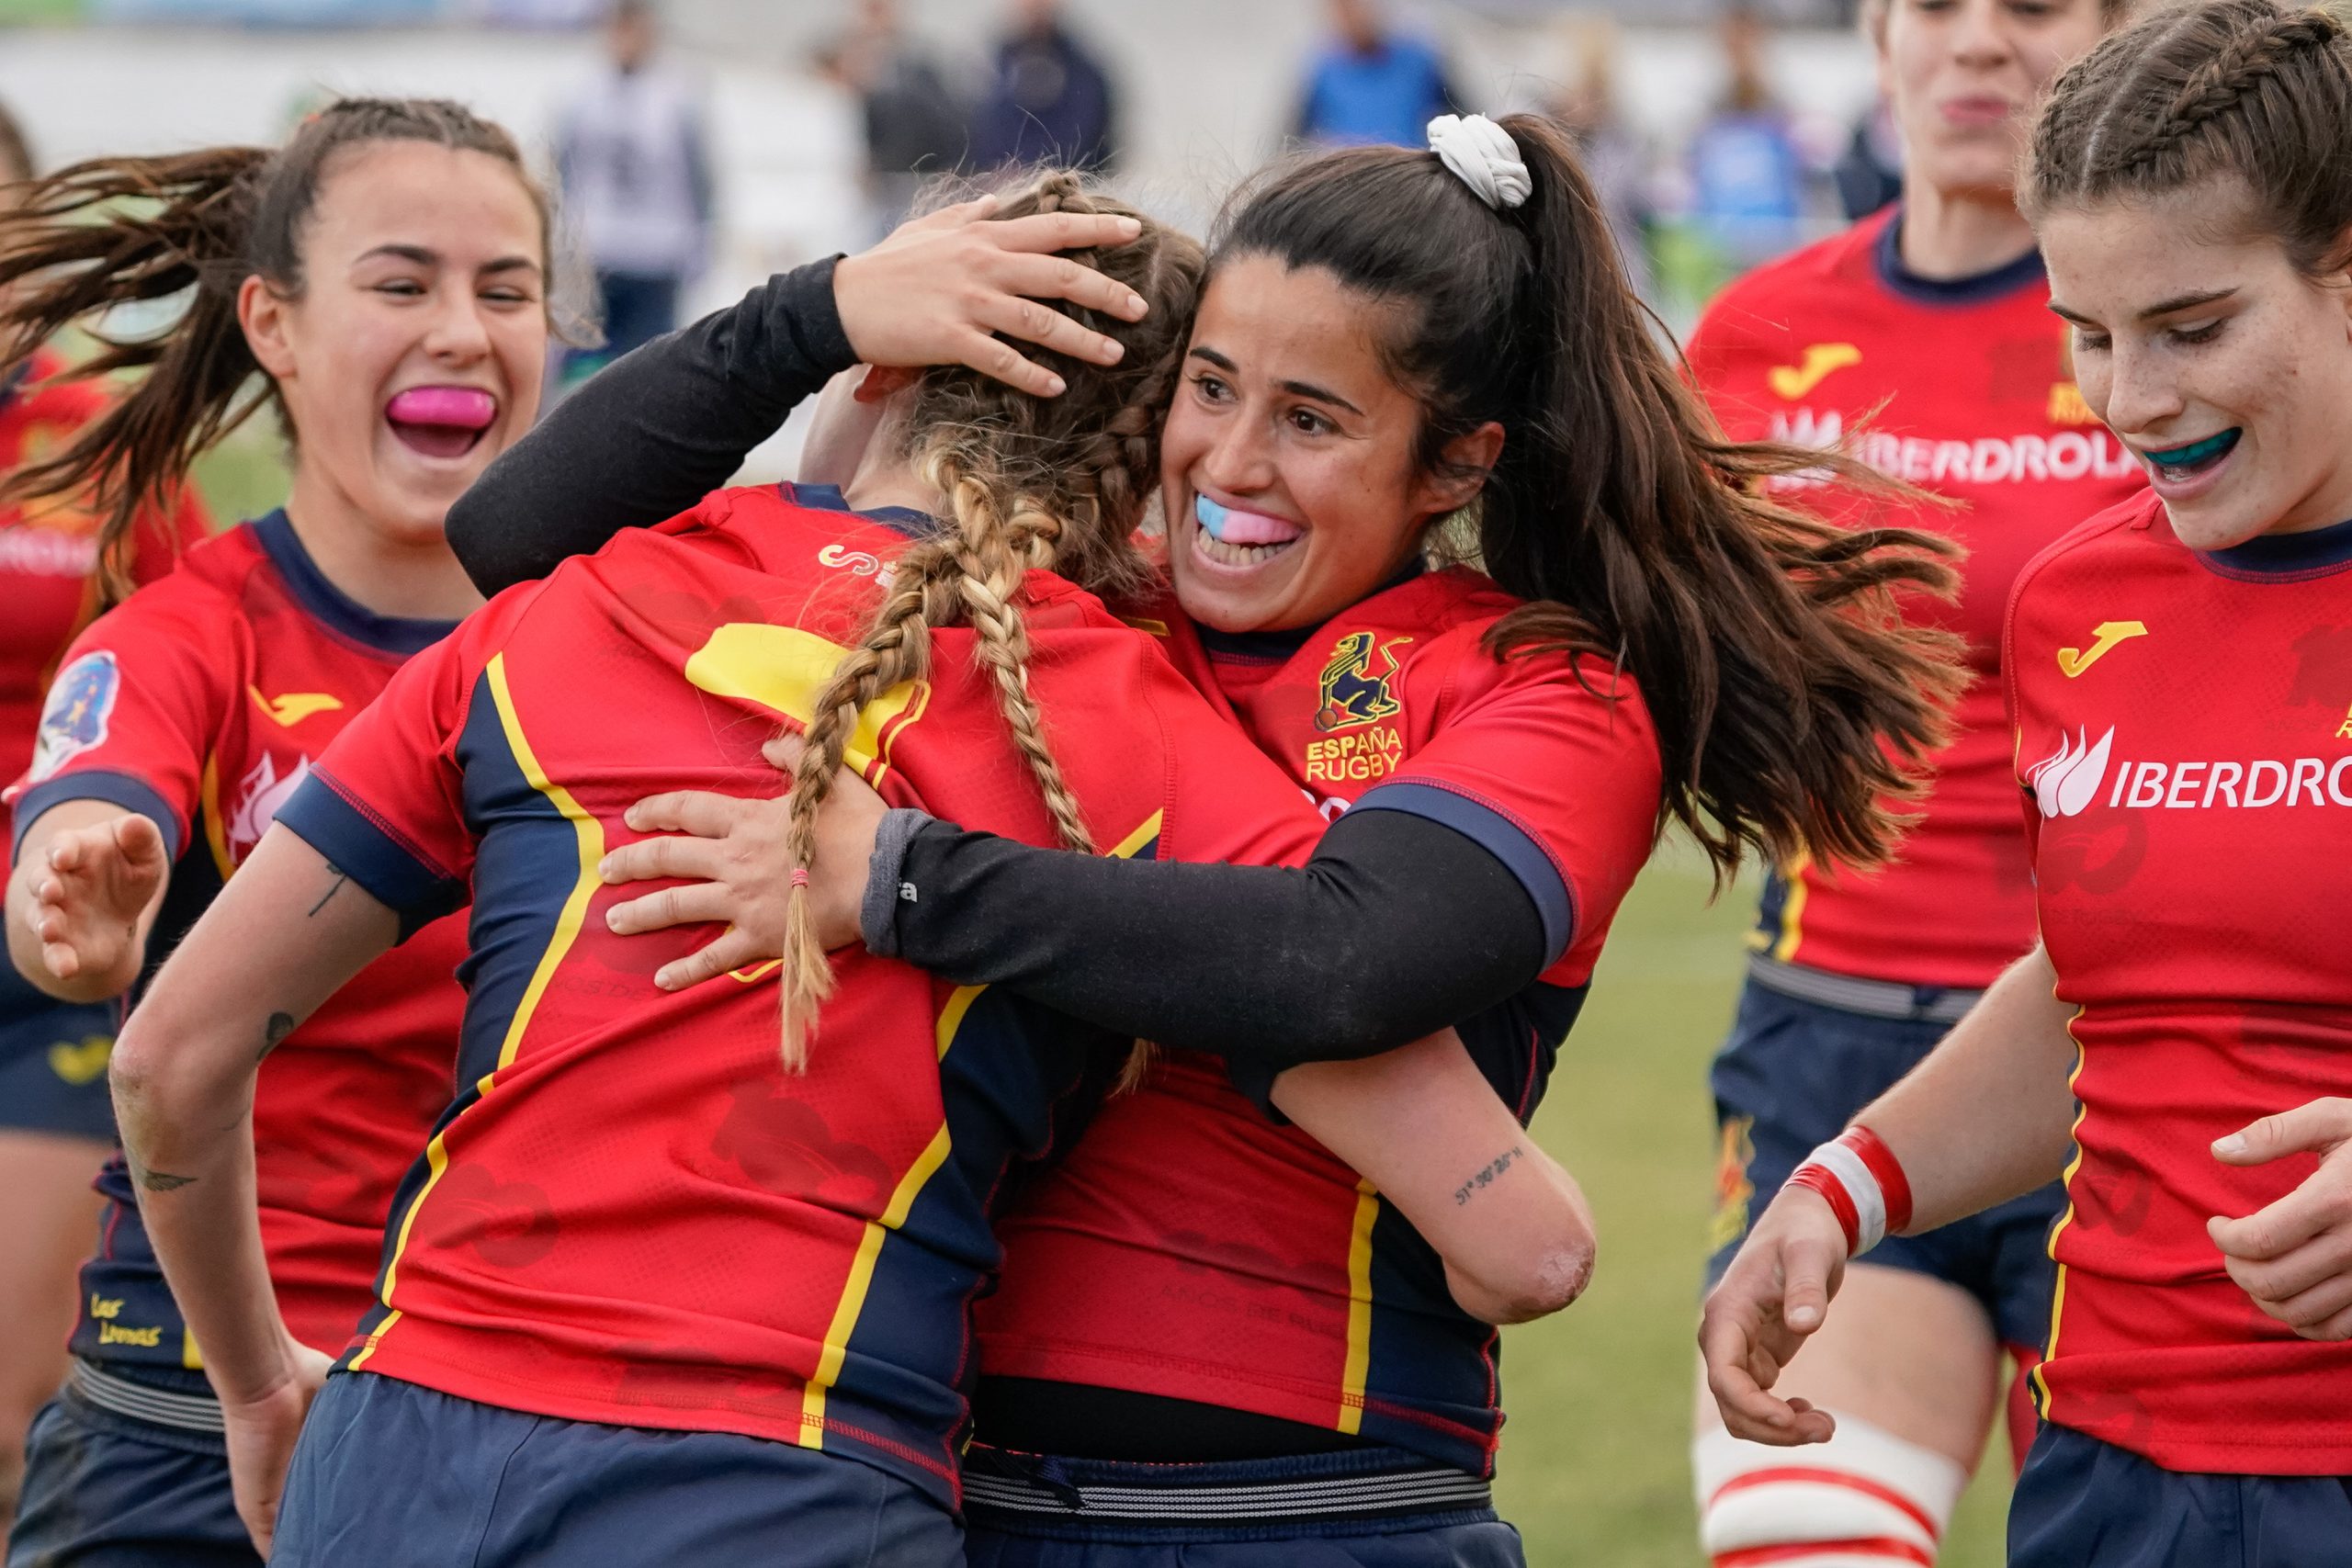 La evolución del rugby femenino en España vista en datos